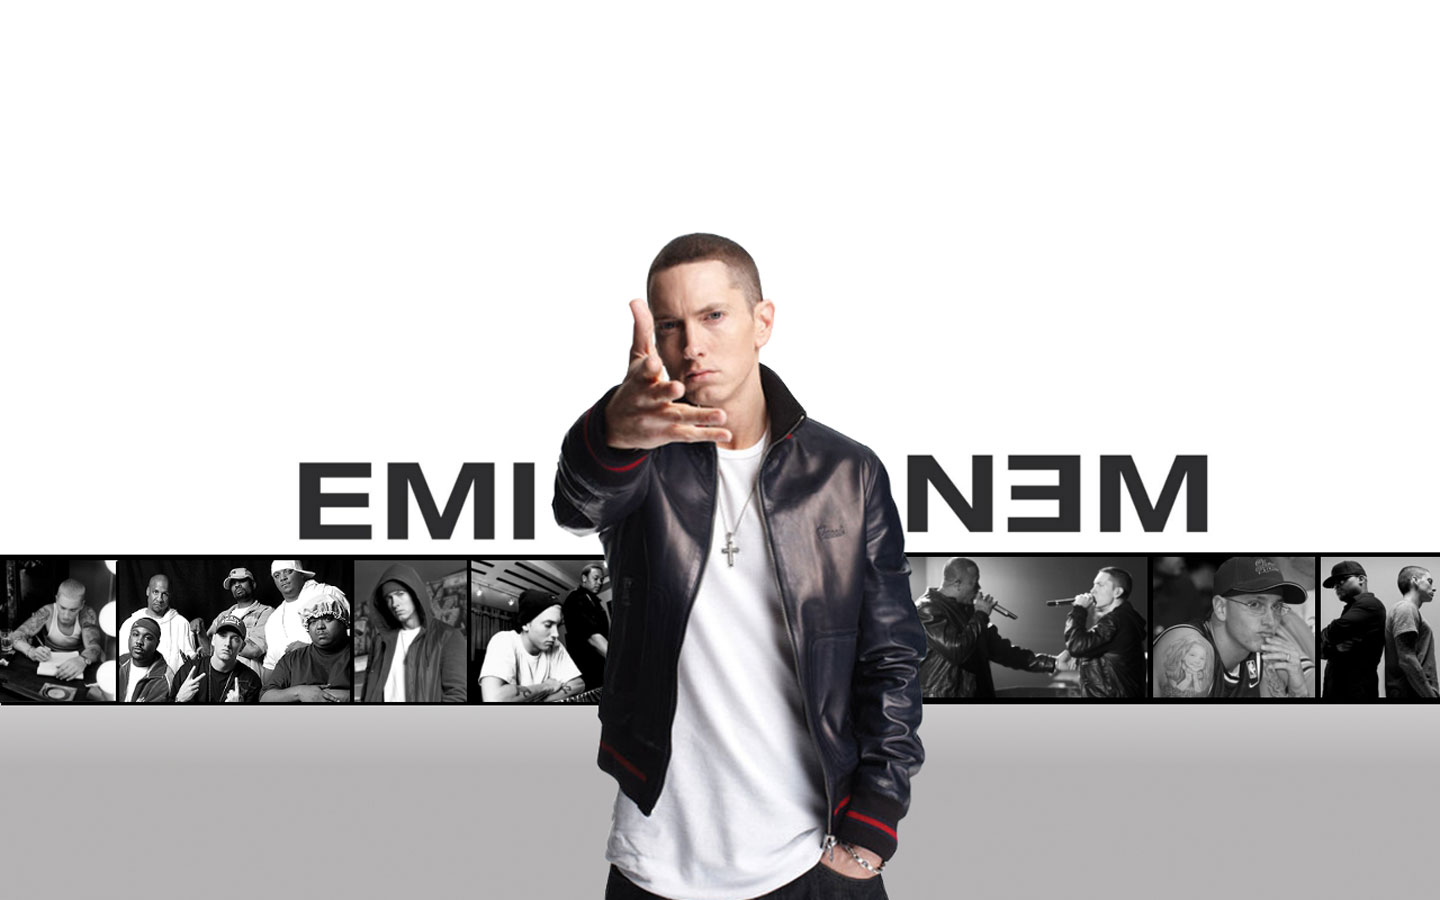 Không phải dễ dàng để có được danh tiếng như Eminem. Nhưng với những nỗ lực, sự đam mê và khả năng âm nhạc siêu phàm, anh chàng rapper đã chinh phục được hàng triệu khán giả trên toàn thế giới. Để khám phá câu chuyện của chàng rapper siêu đỉnh, hãy xem ngay hình ảnh này. 